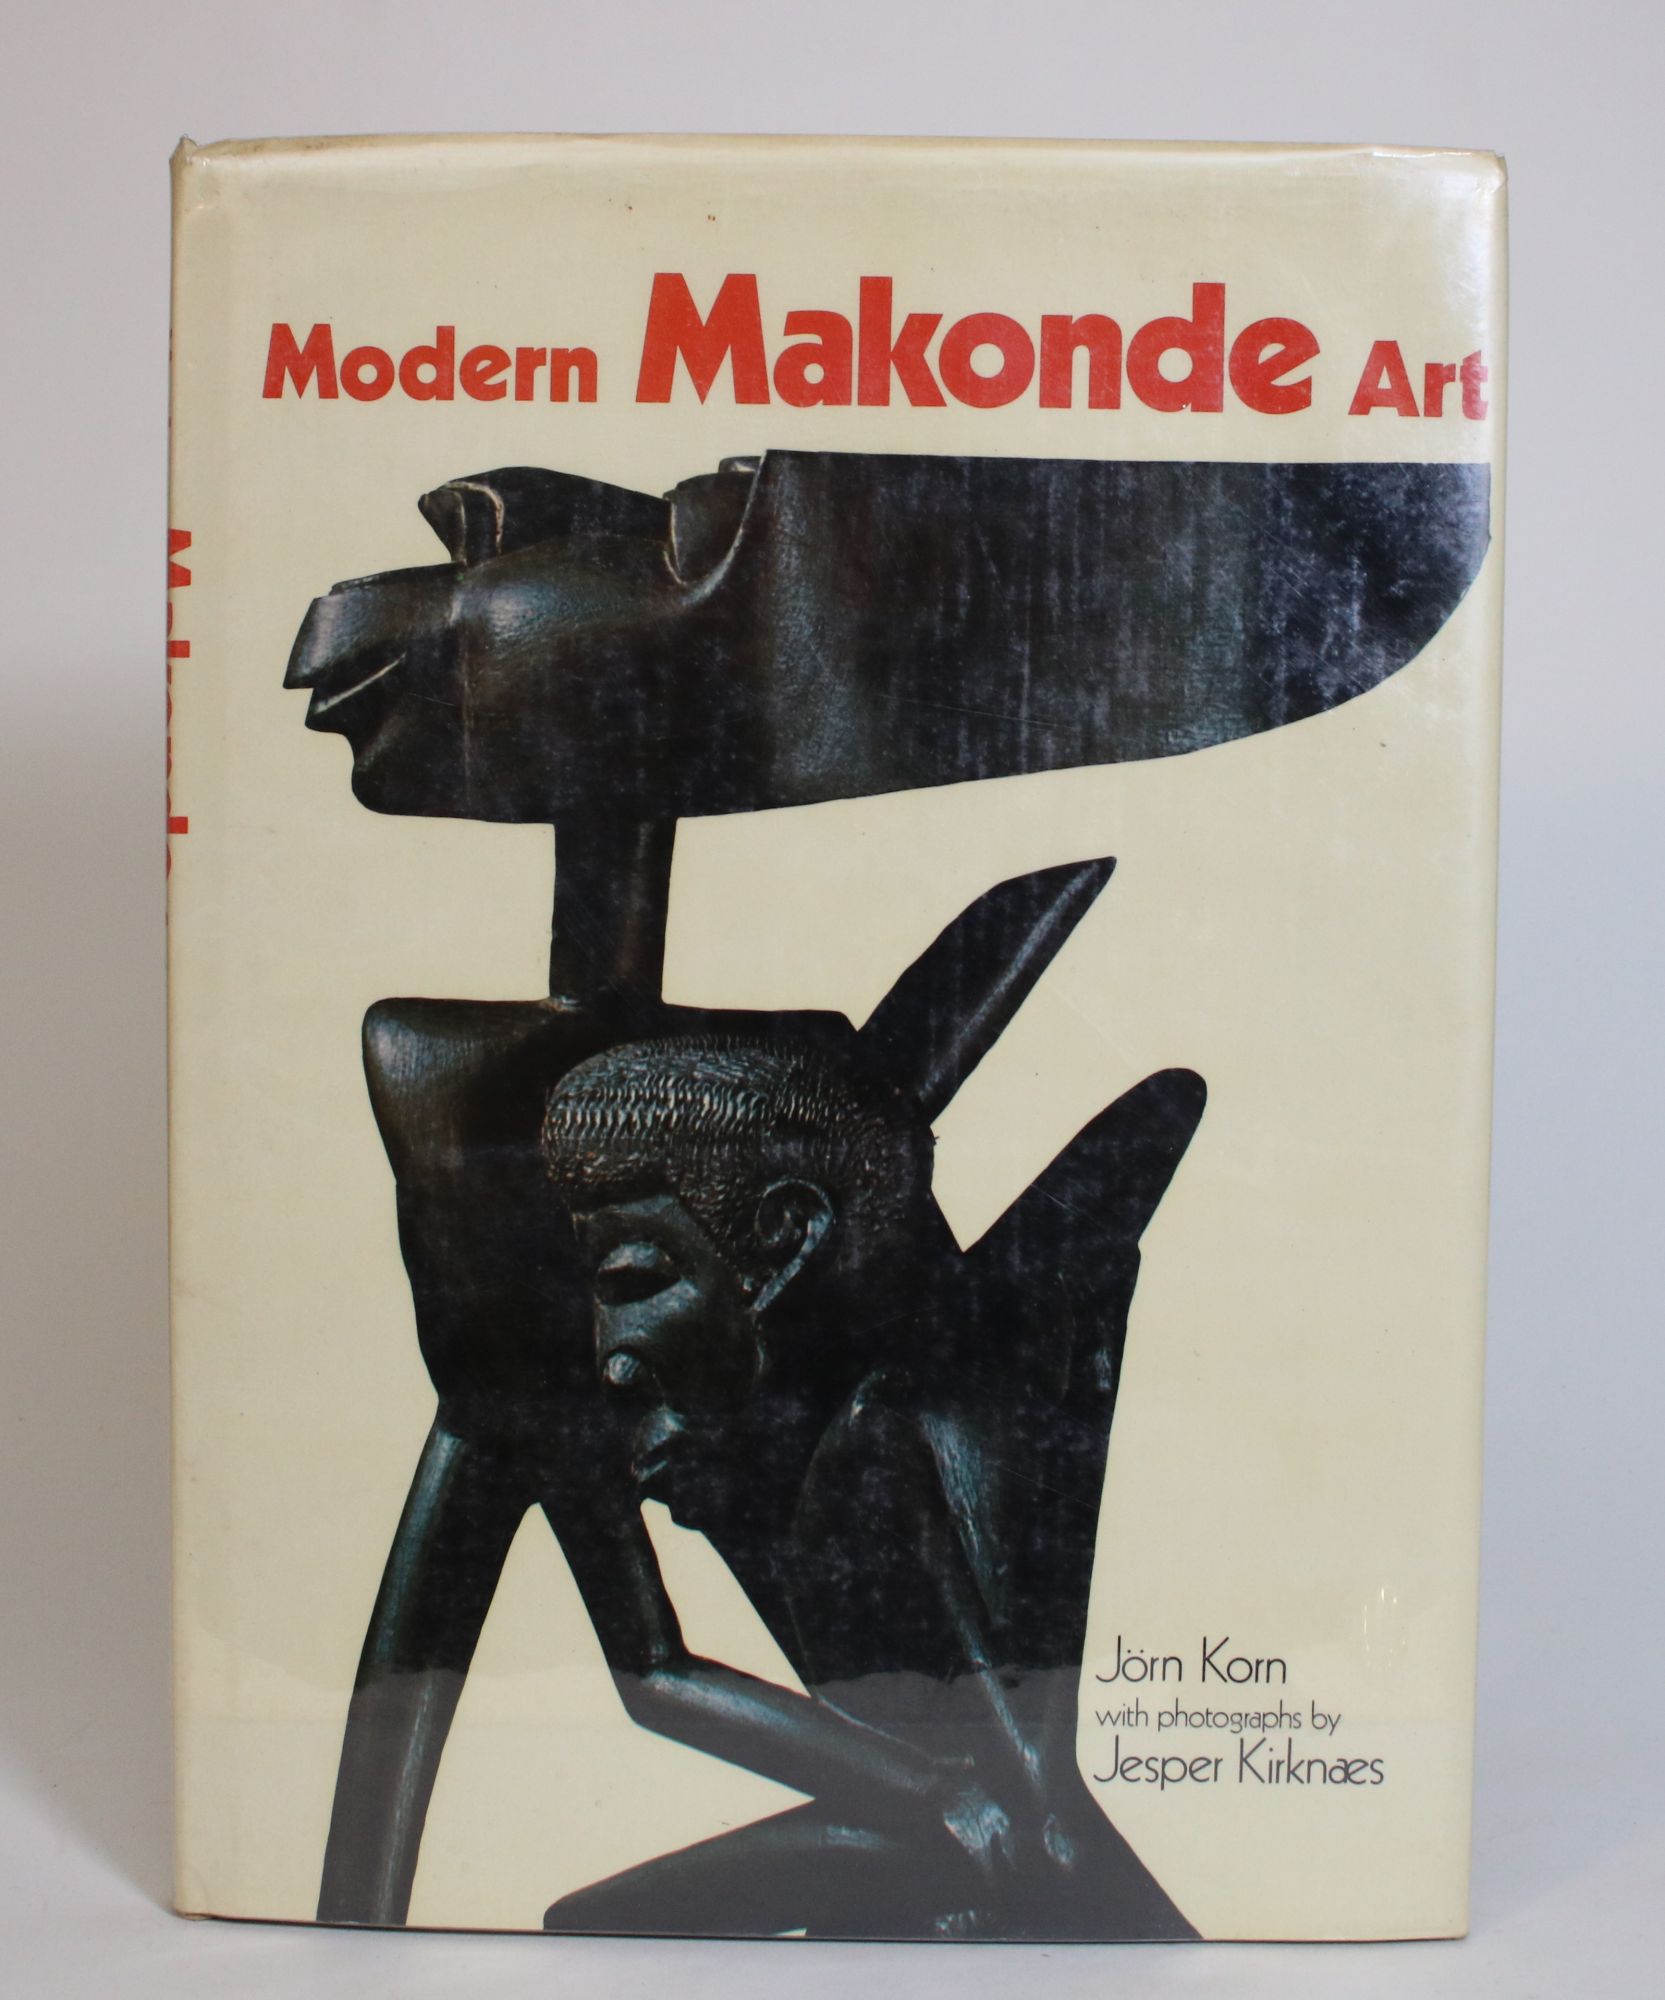 Modern Makonde Art - Korn, Jorn; Kirknaes, Jesper (photographs)